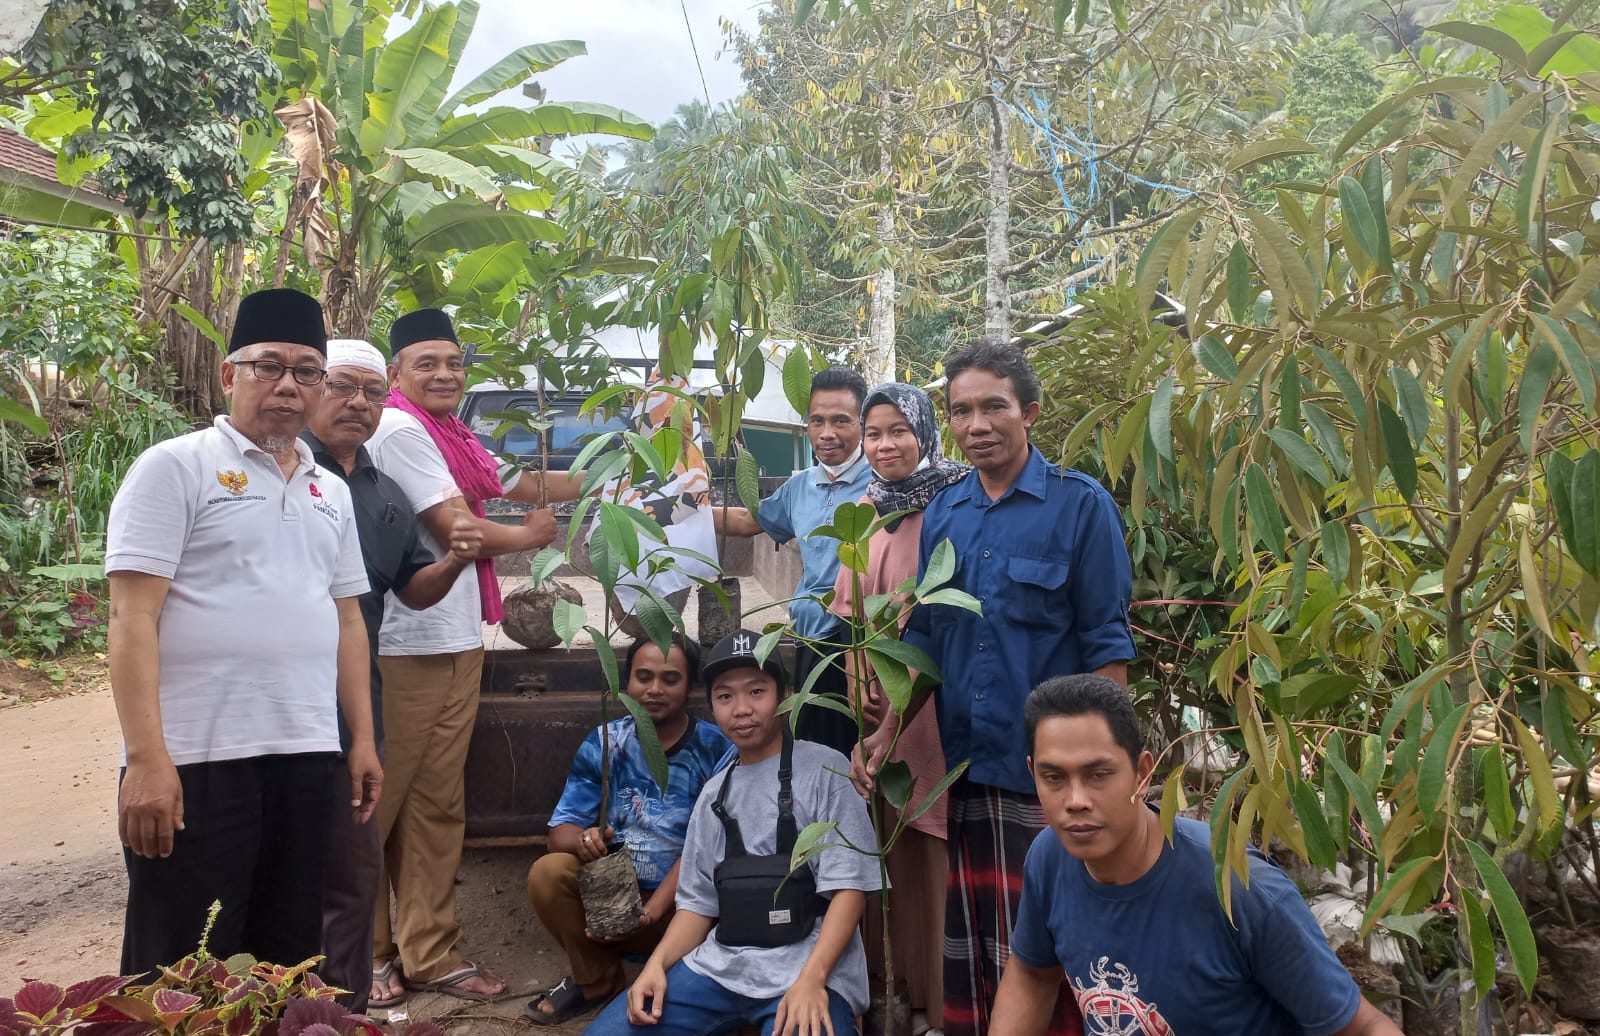 Biro OKK PW AMAN NTB menyerahkan bibit Pohon kepada Komunitas Masyarakat Adat didampingi Pengurus AMAN Lombok Barat.